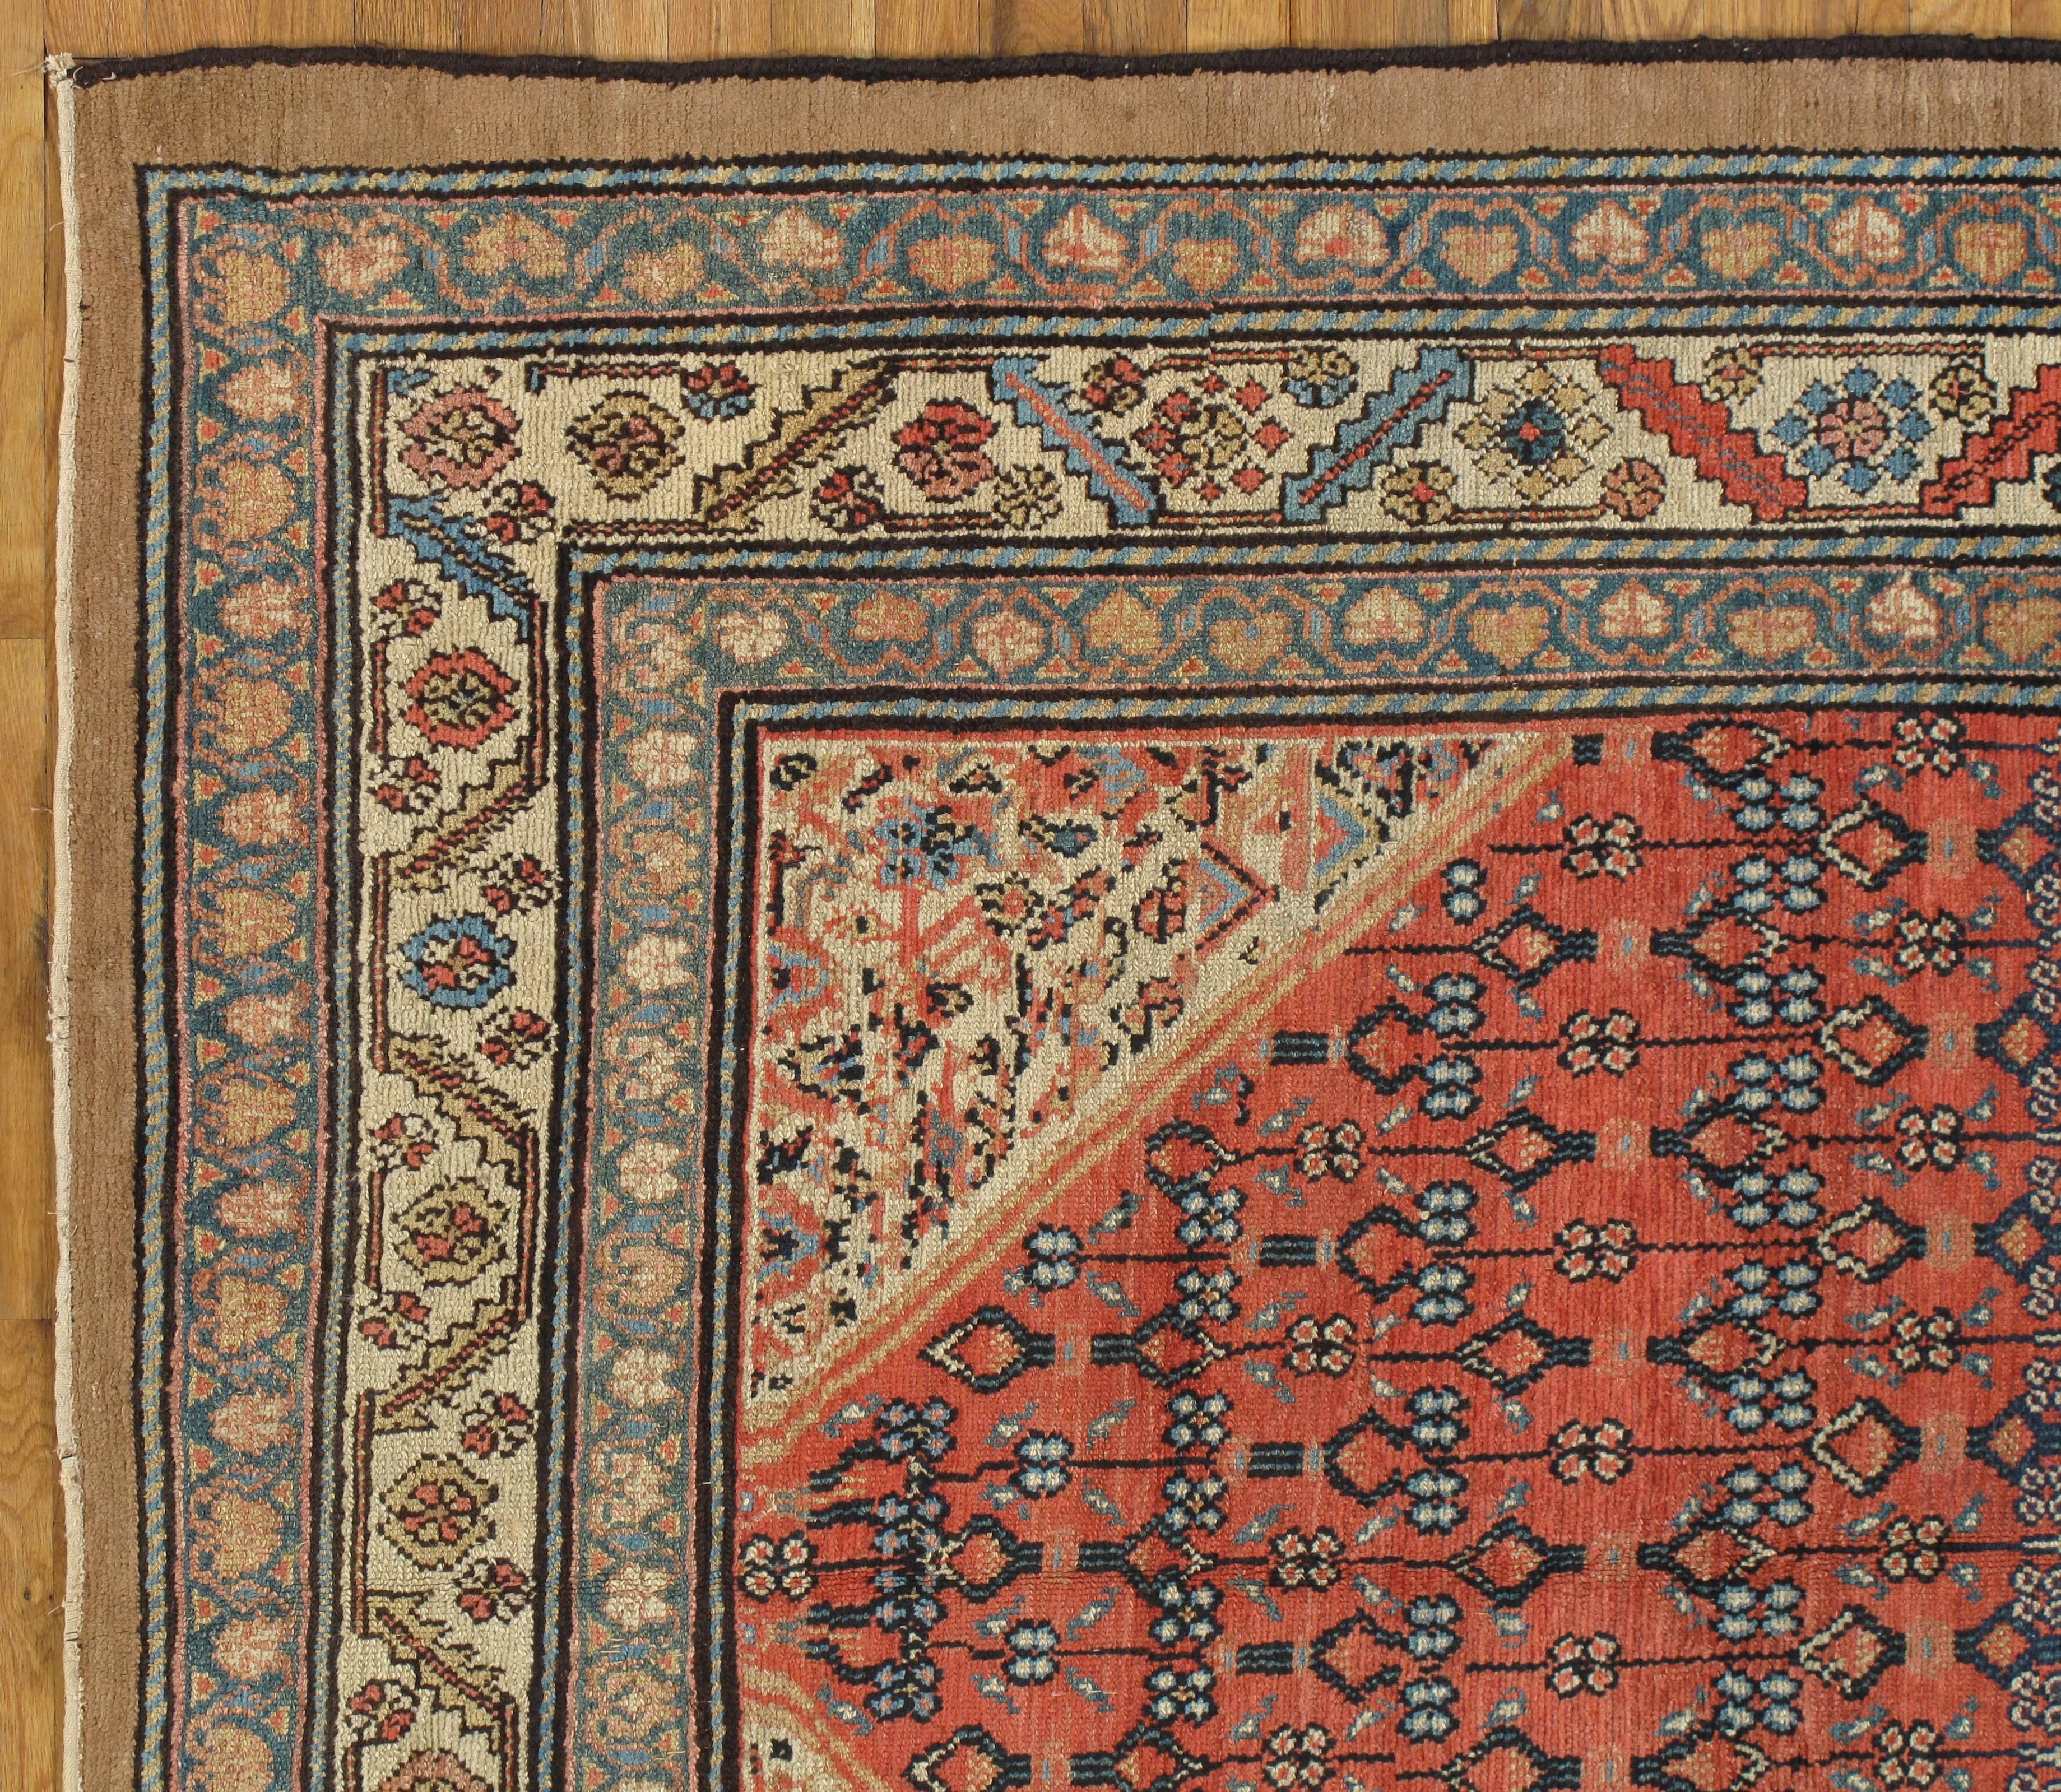 Das Dorf Serab ist bekannt für seine feinen langen Läufer mit dem charakteristischen Kamelgrund und rautenförmigen Medaillons. Diese Teppiche werden im Dorf Serab in der nordwestlichen Region Persiens gewebt. Maße: 5'5